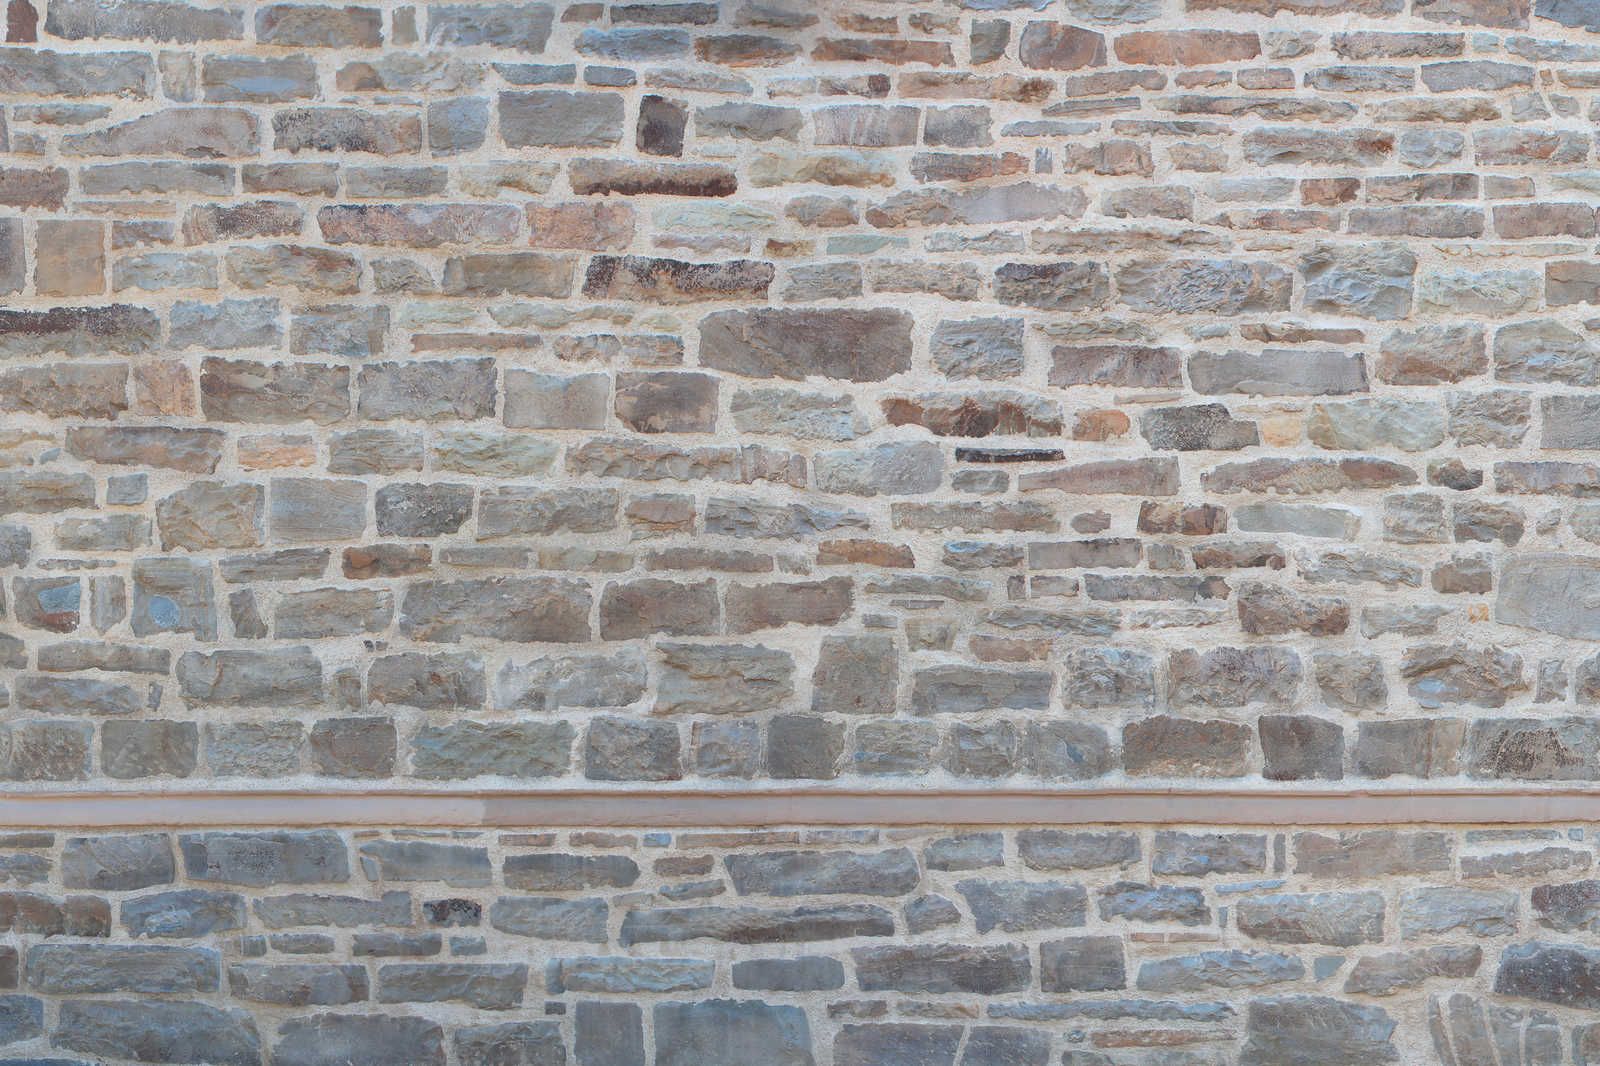             Leinwandbild Mauerwerk Hellgrau mit Naturstein Design – 0,90 m x 0,60 m
        